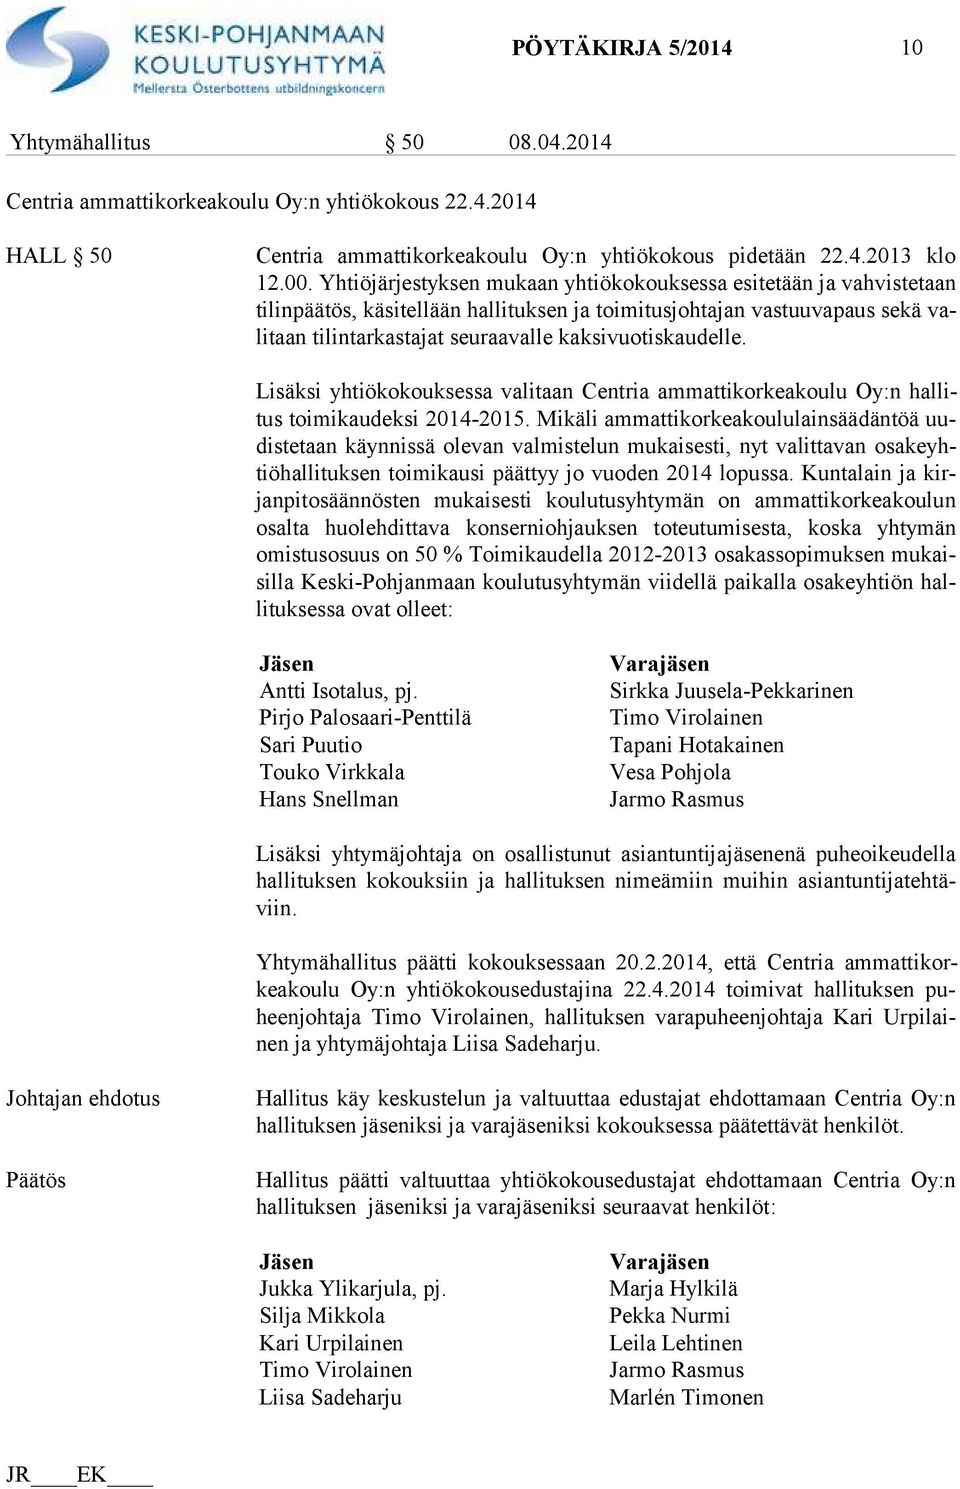 kaksivuotiskaudelle. Lisäksi yhtiökokouksessa valitaan Centria ammattikorkeakoulu Oy:n hal litus toimikaudeksi 2014-2015.